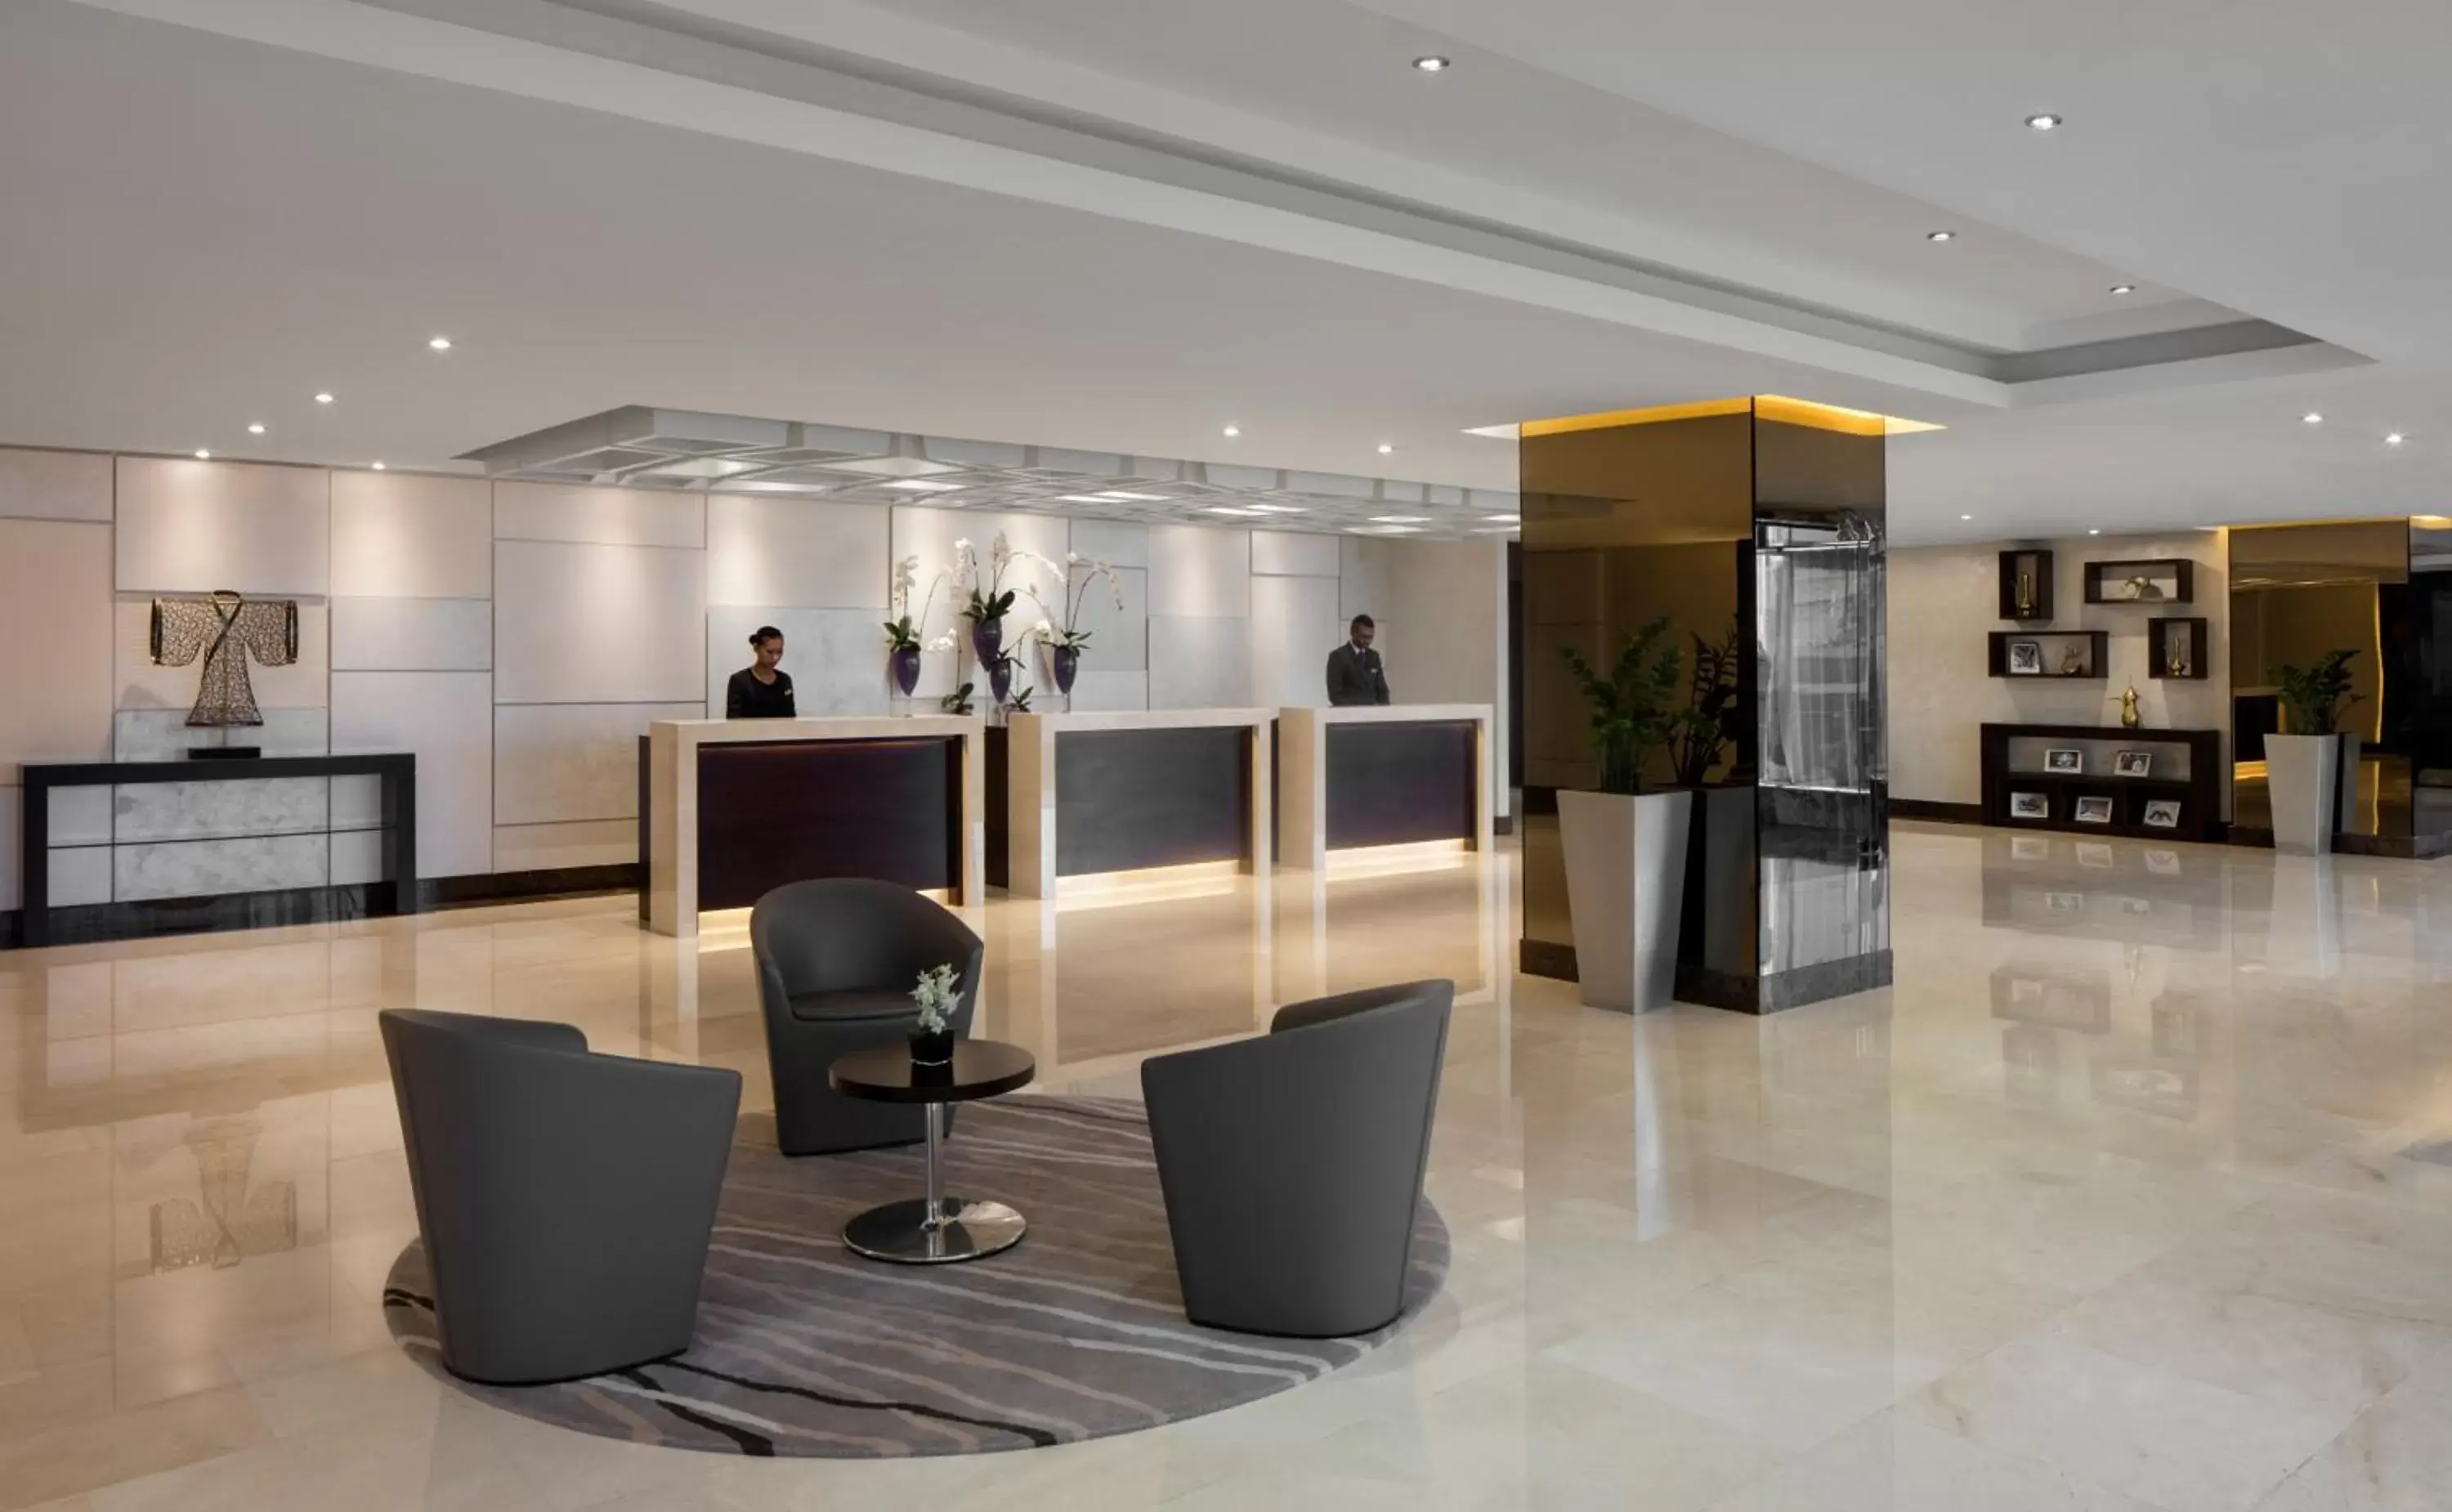 Lobby or reception, Lobby/Reception in Jumeira Rotana – Dubai